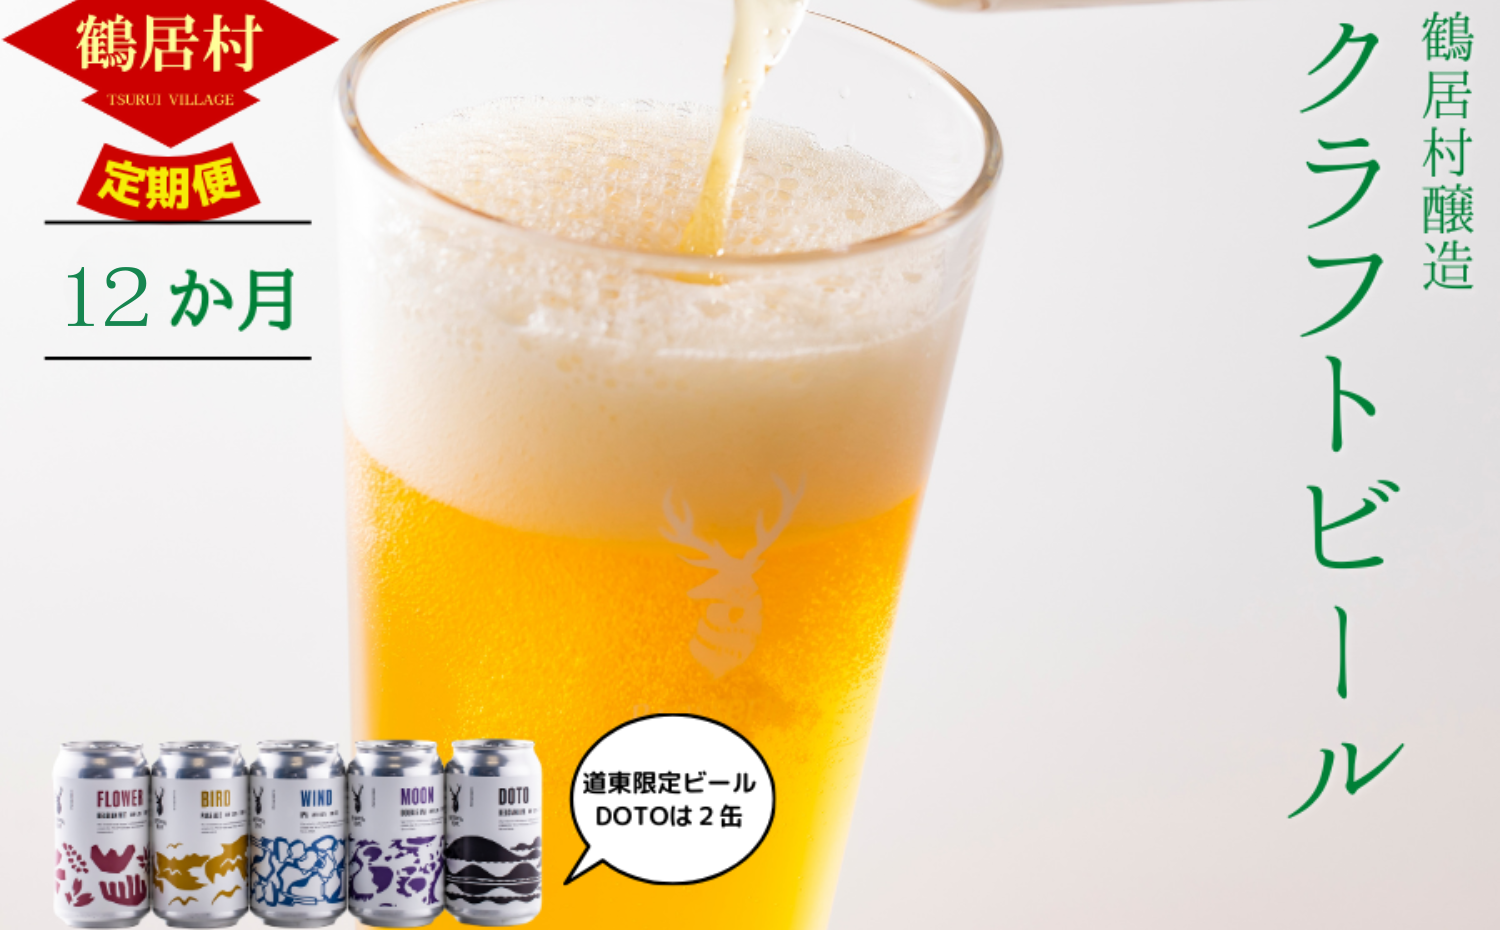 【定期便】Brasserie Knotのレギュラービール4本+東北海道限定ビール2本セット 12回